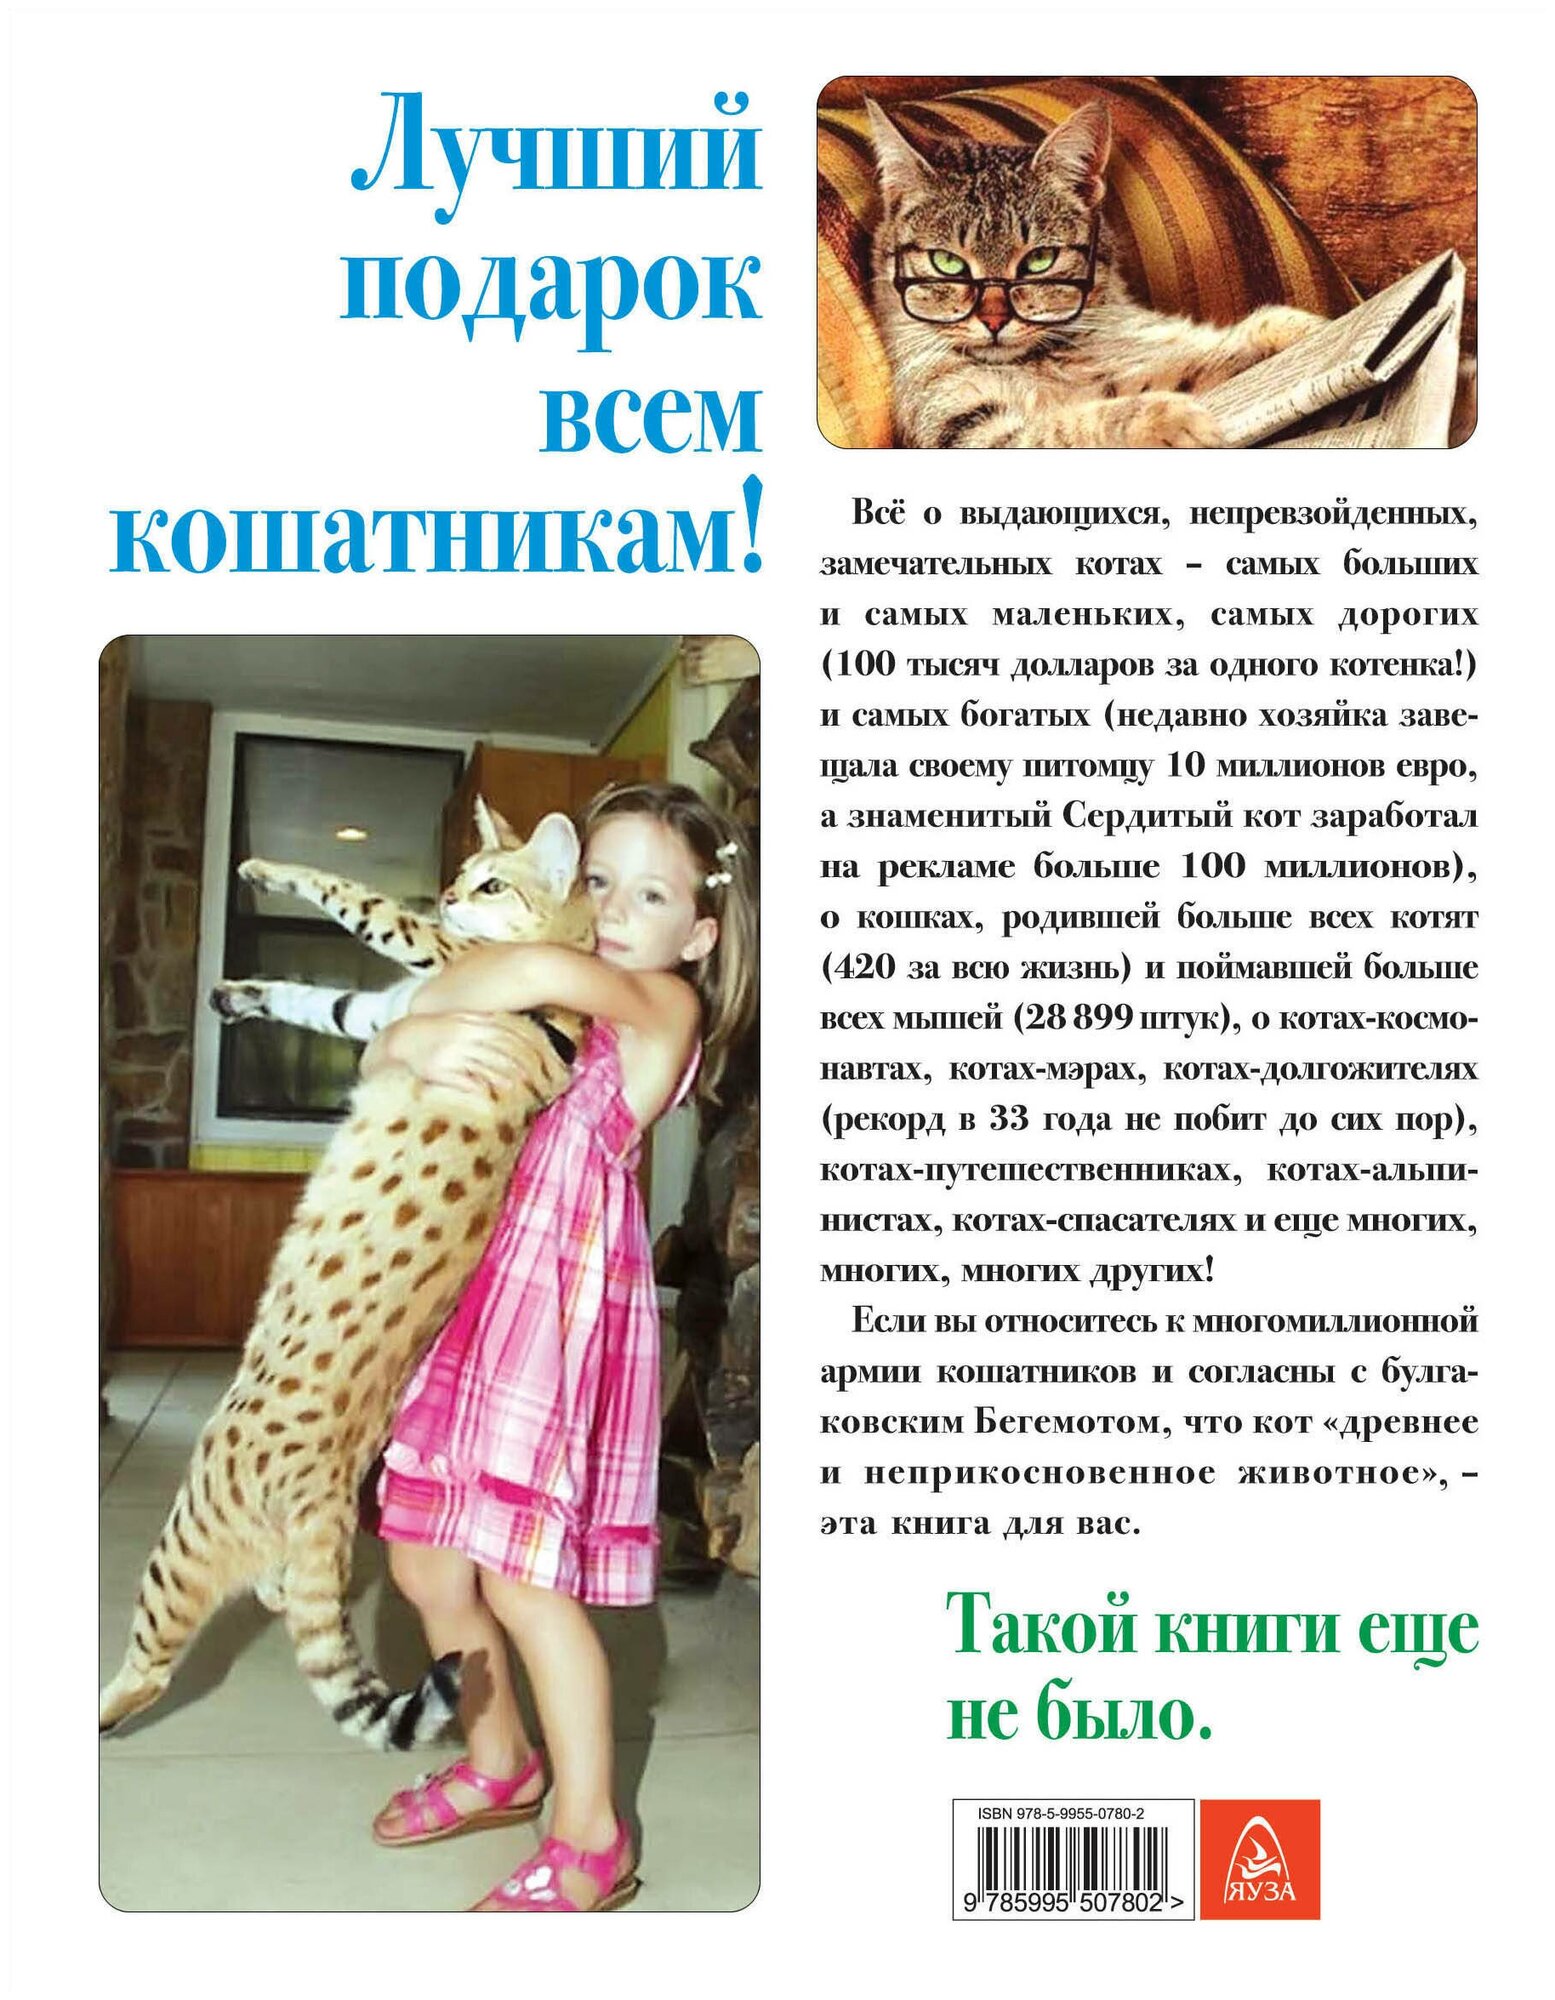 Жизнь замечательных котов (Незвинская Л. (ред.)) - фото №3